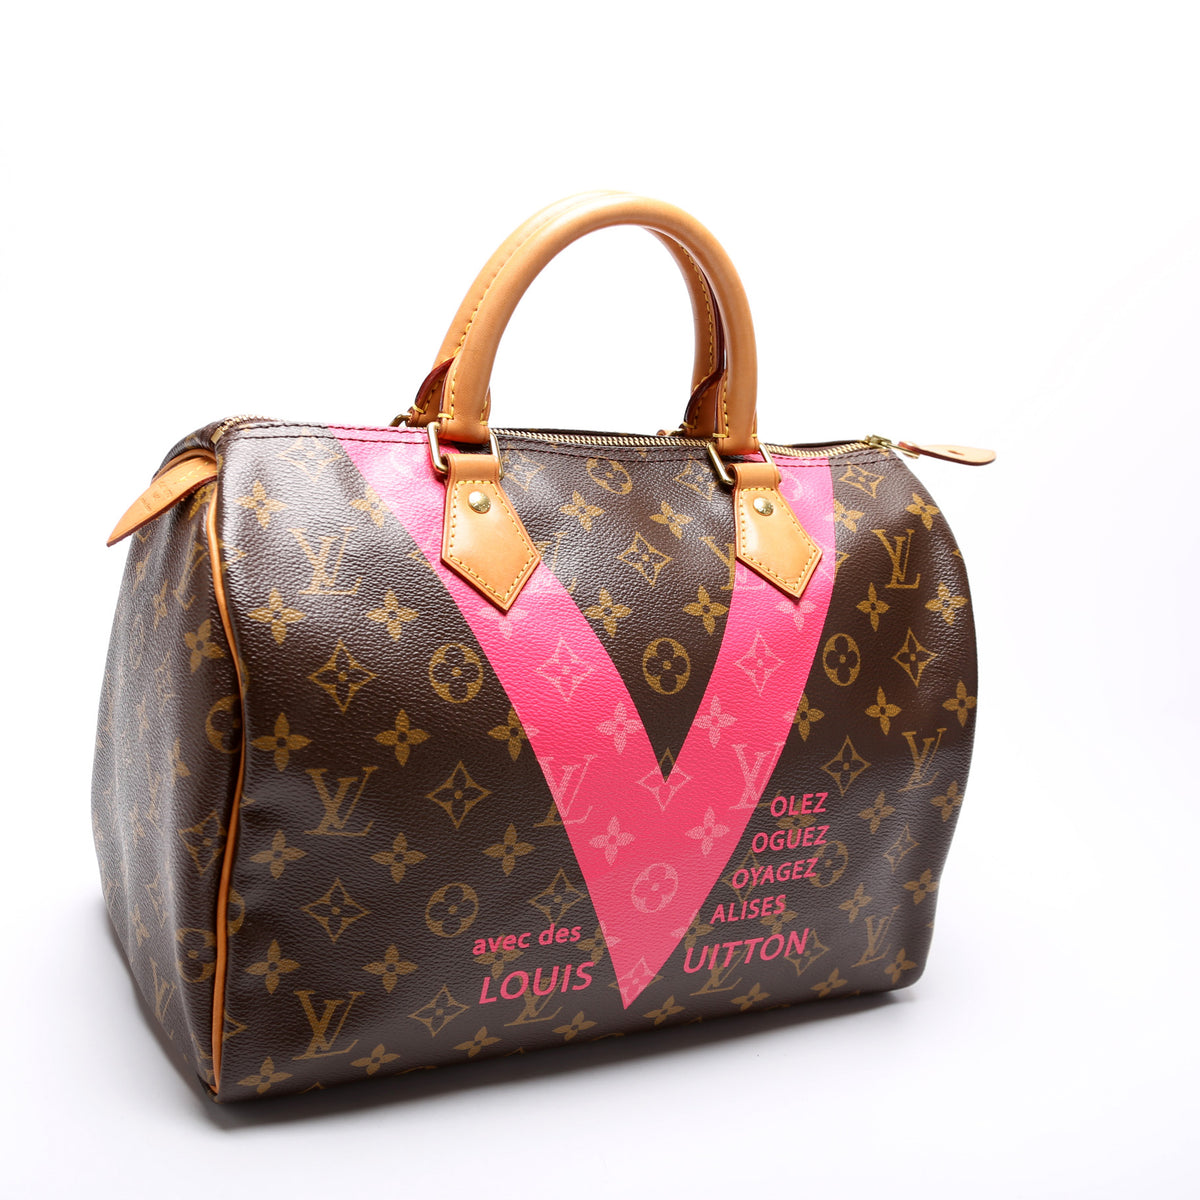 Louis Vuitton Speedy 30 Limited Edition Grenade V Monogram Handbag